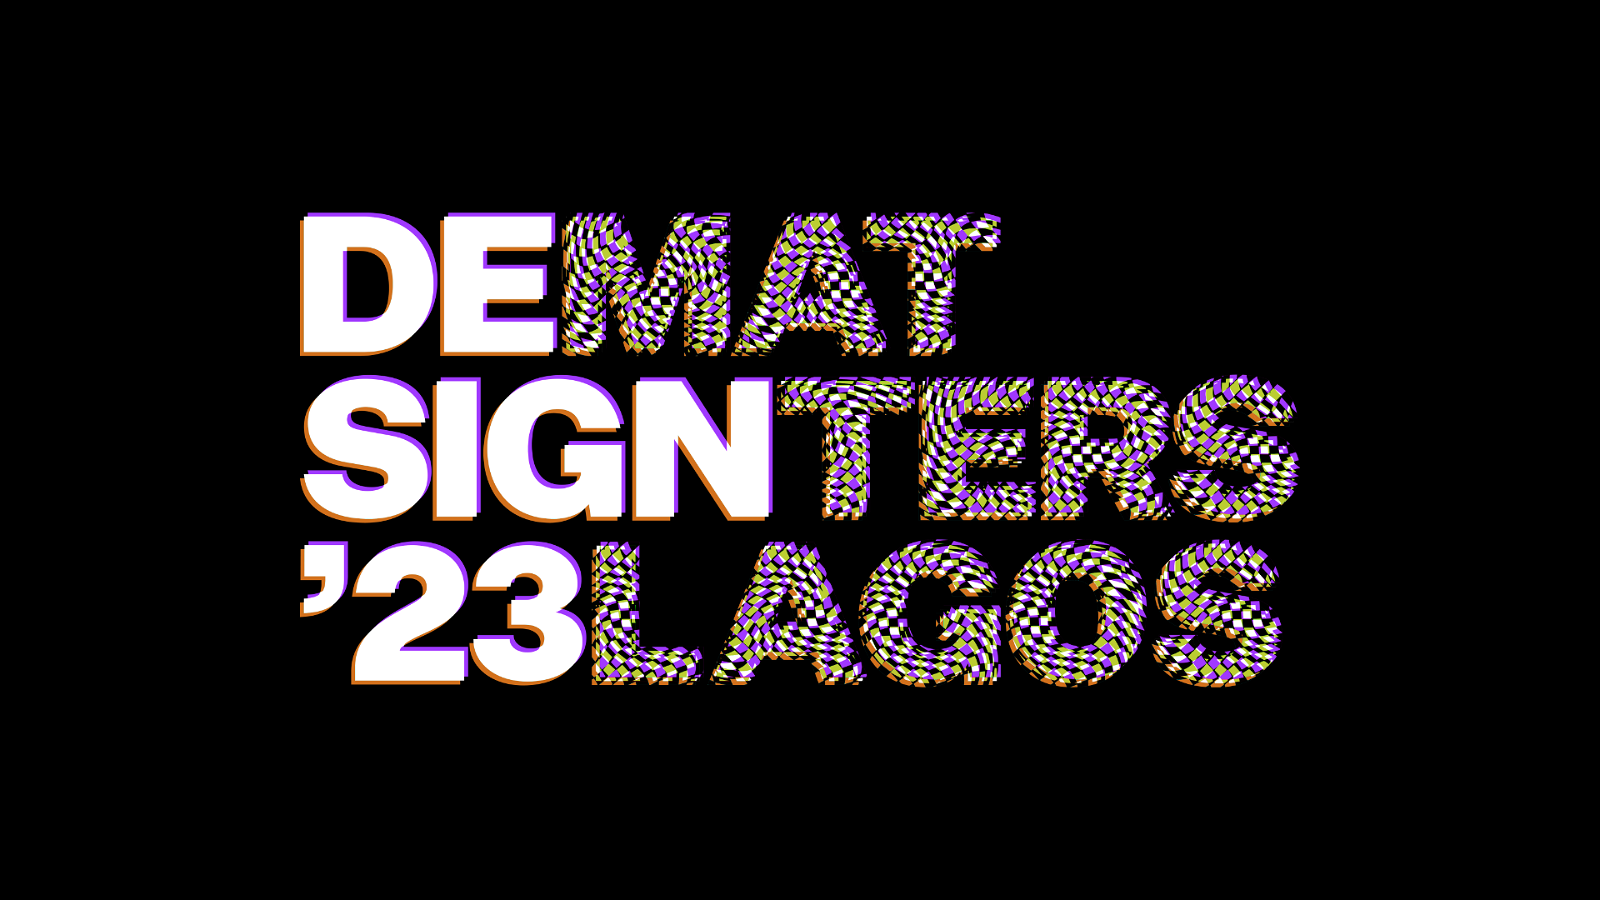 Design Matters Lagos 23